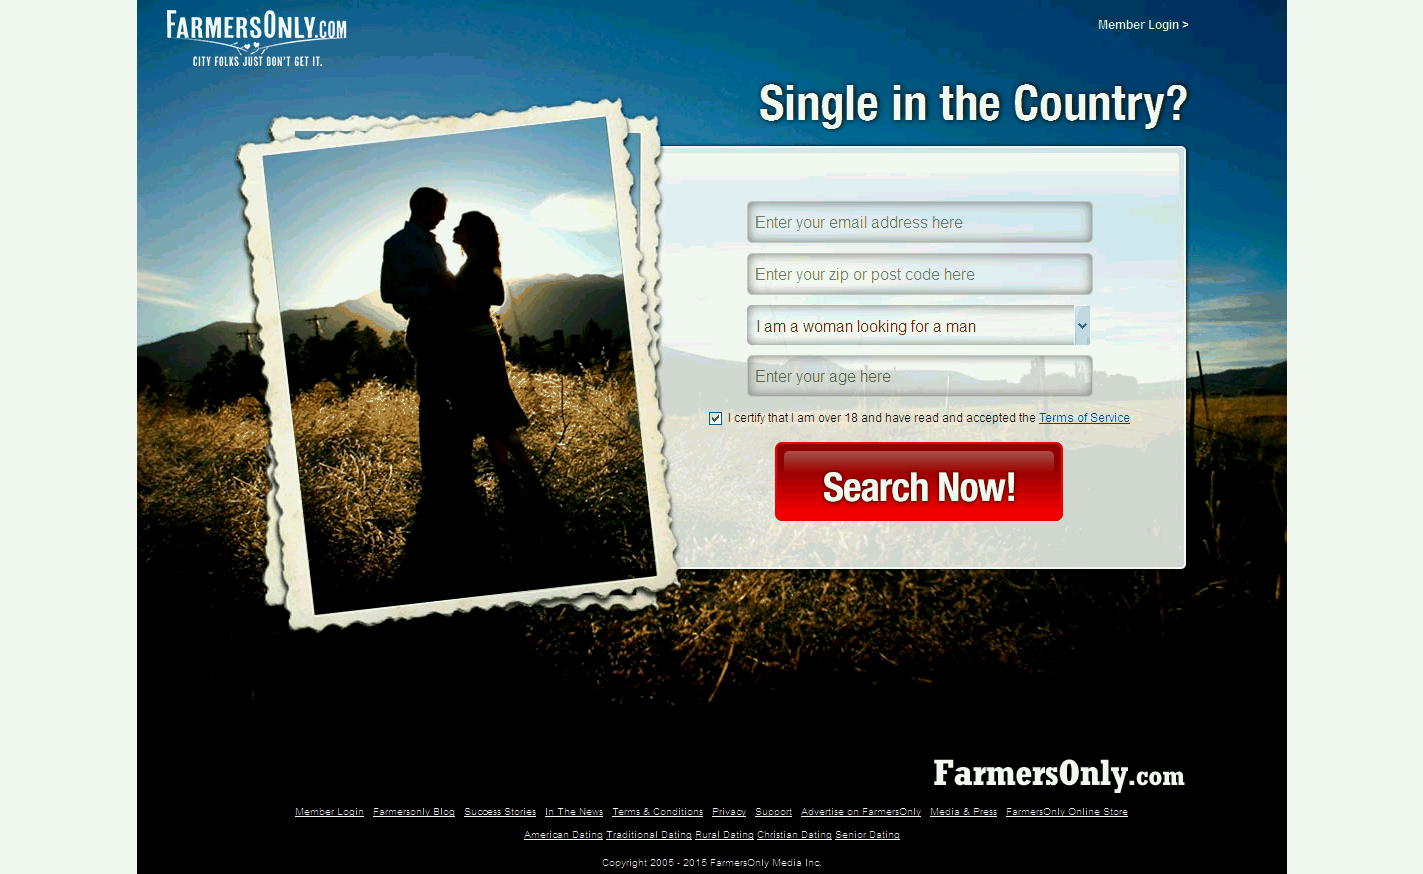 Best Senior Online Dating for Farmers Over 40 in Canada | Senior Online ...